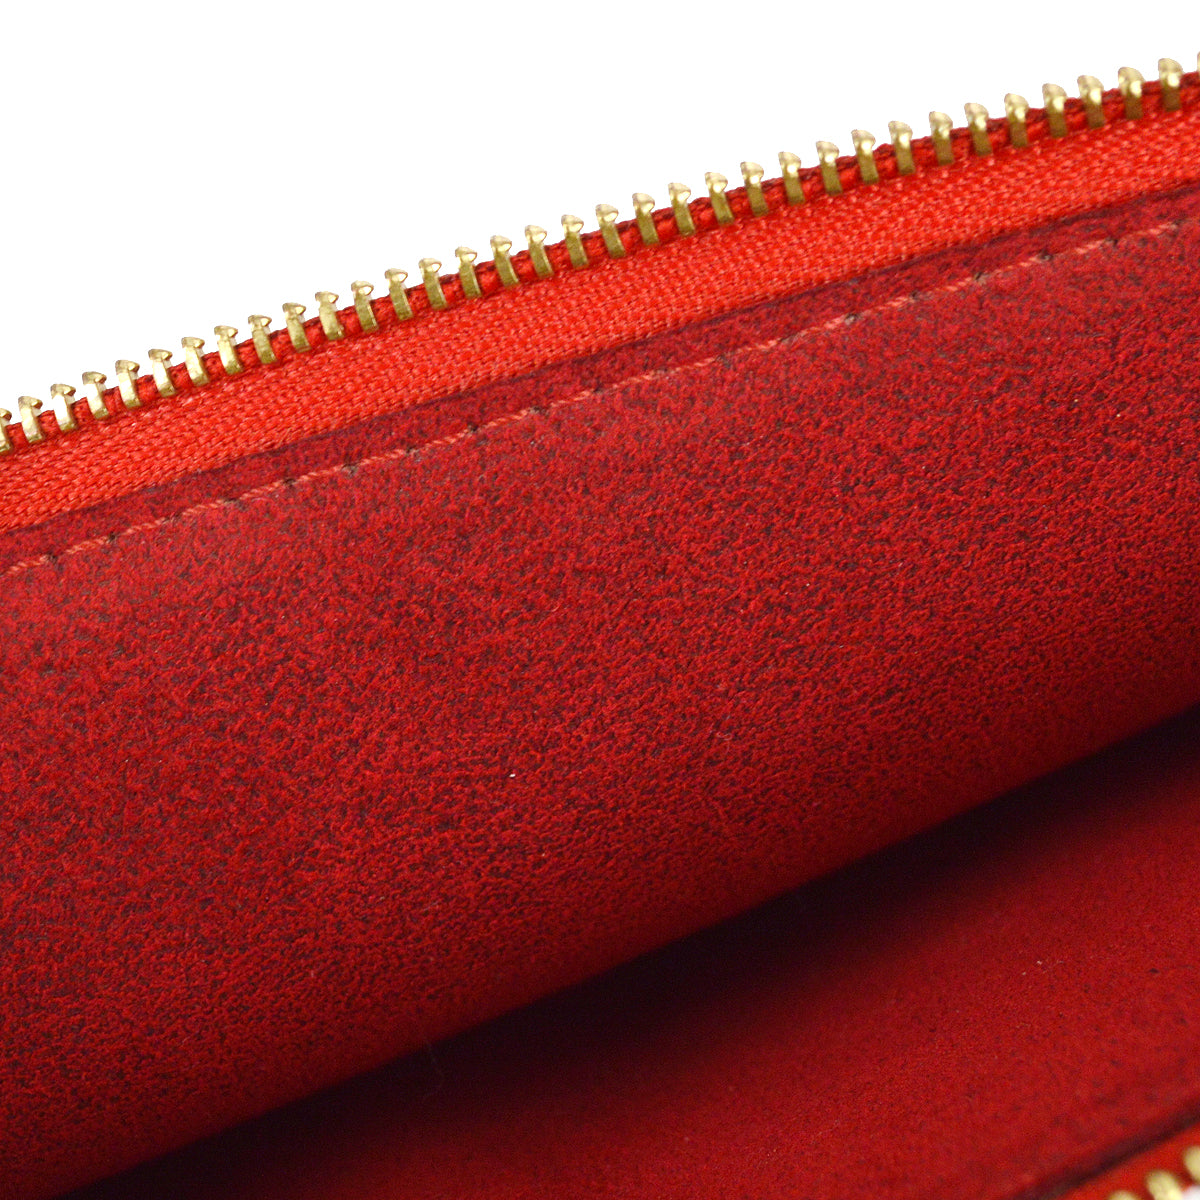 Louis Vuitton 2002 Red Epi Pochette Accessoires Handbag M52947